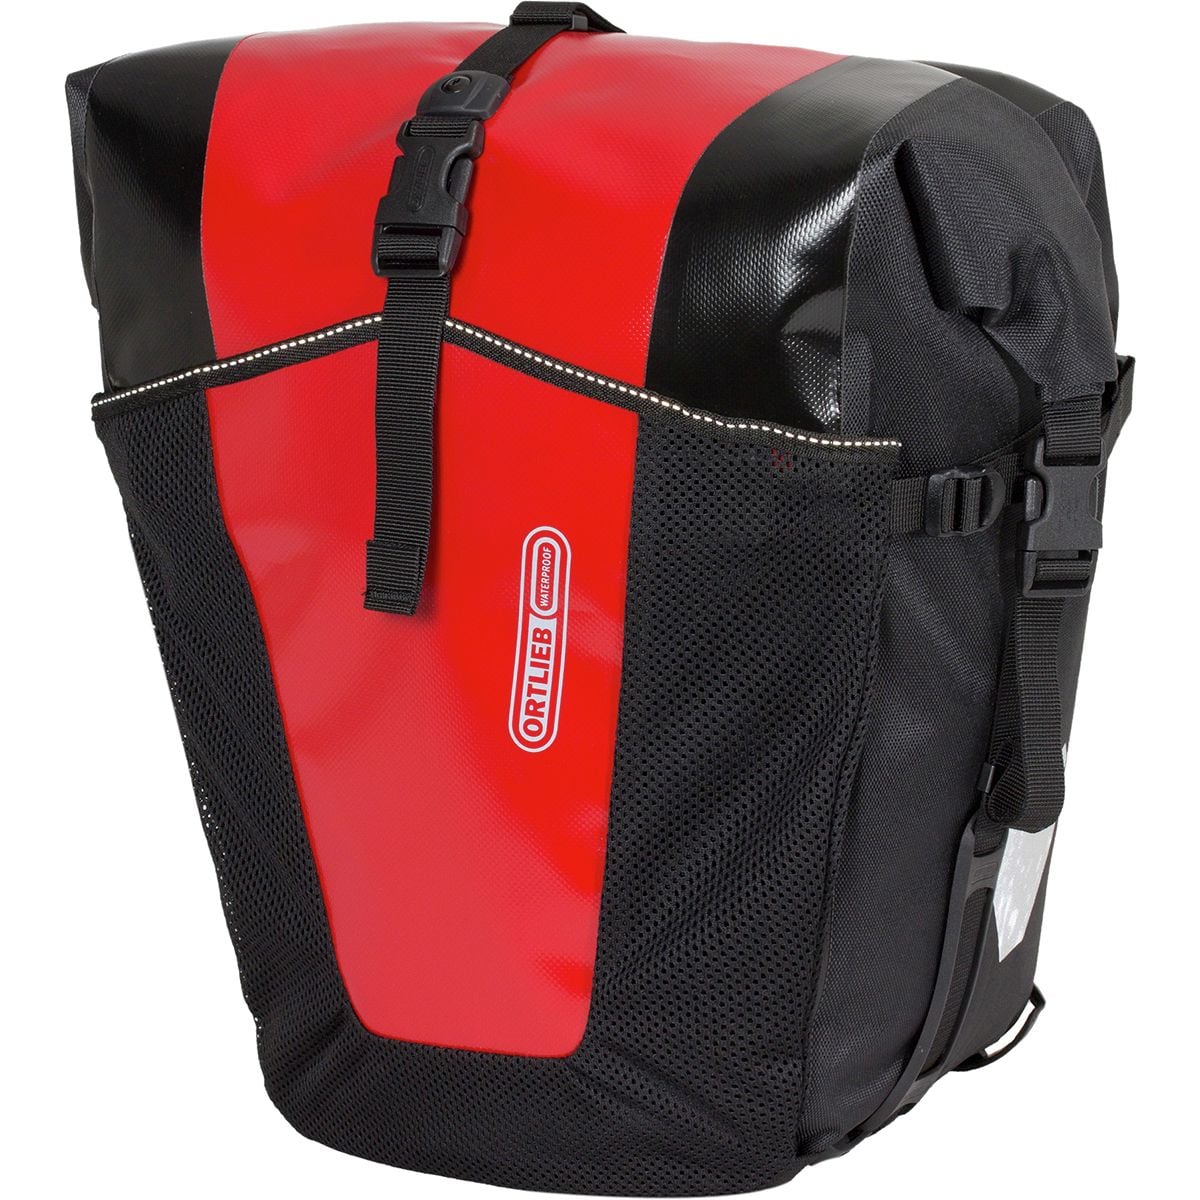 комплект велосипедных сумок newboler Классические кофры back-roller pro — пара Ortlieb, цвет red/black